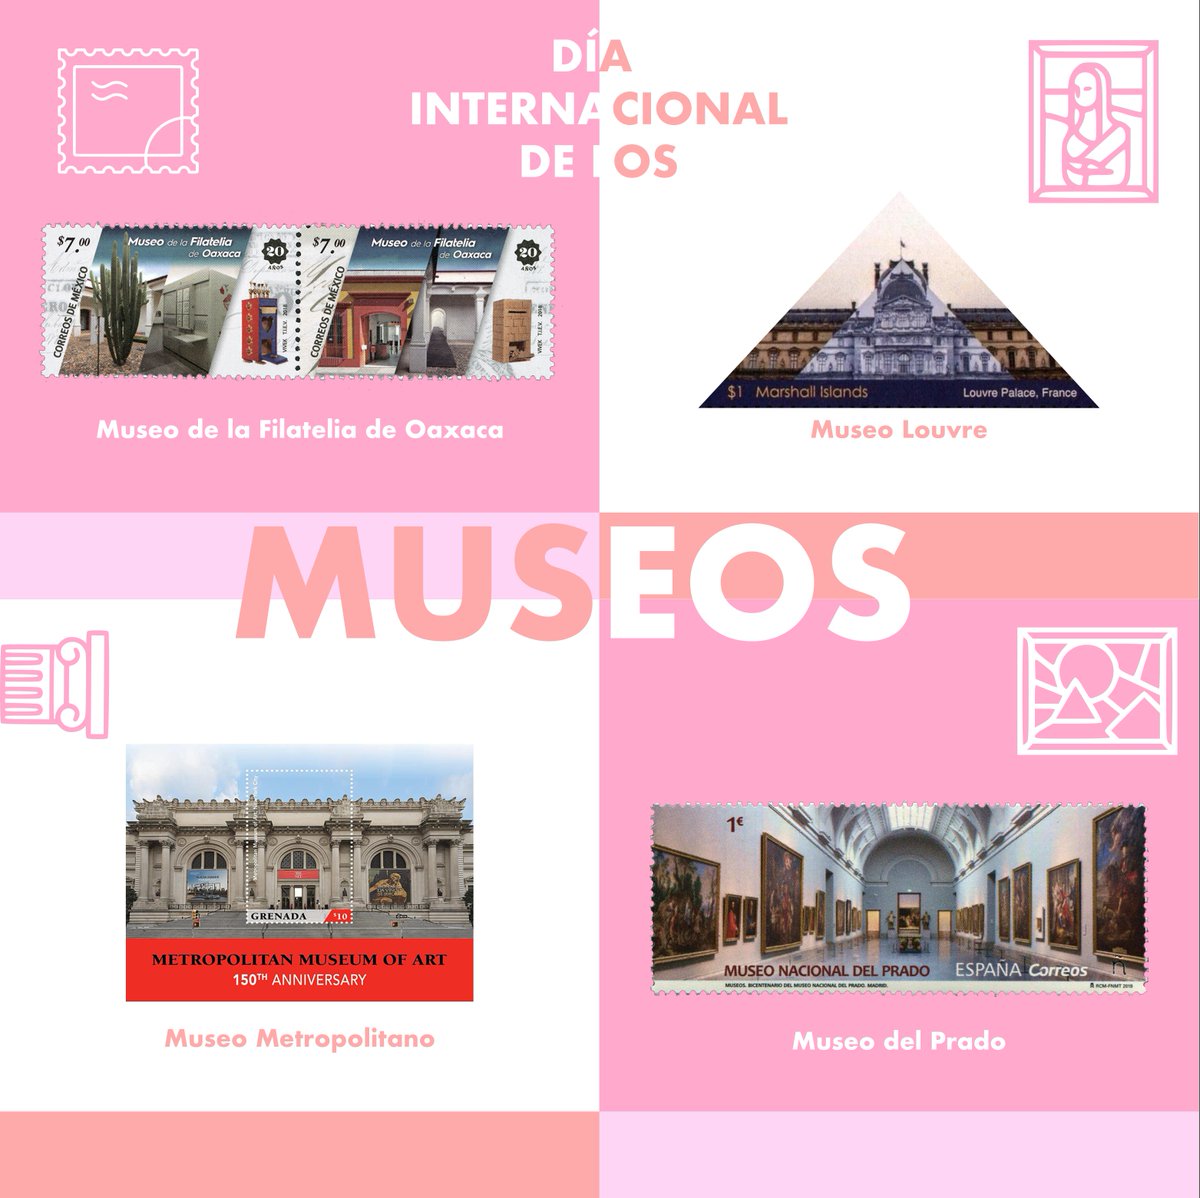 ¡Hoy celebramos el Día Internacional de los Museos!, 📷📷 Esto con el fin de concienciar a las personas acerca de la relevancia de los museos como medio para el intercambio cultural, el aprendizaje y el desarrollo intelectual y sensible de la sociedad. ¿Cuál es tu museo favorito?